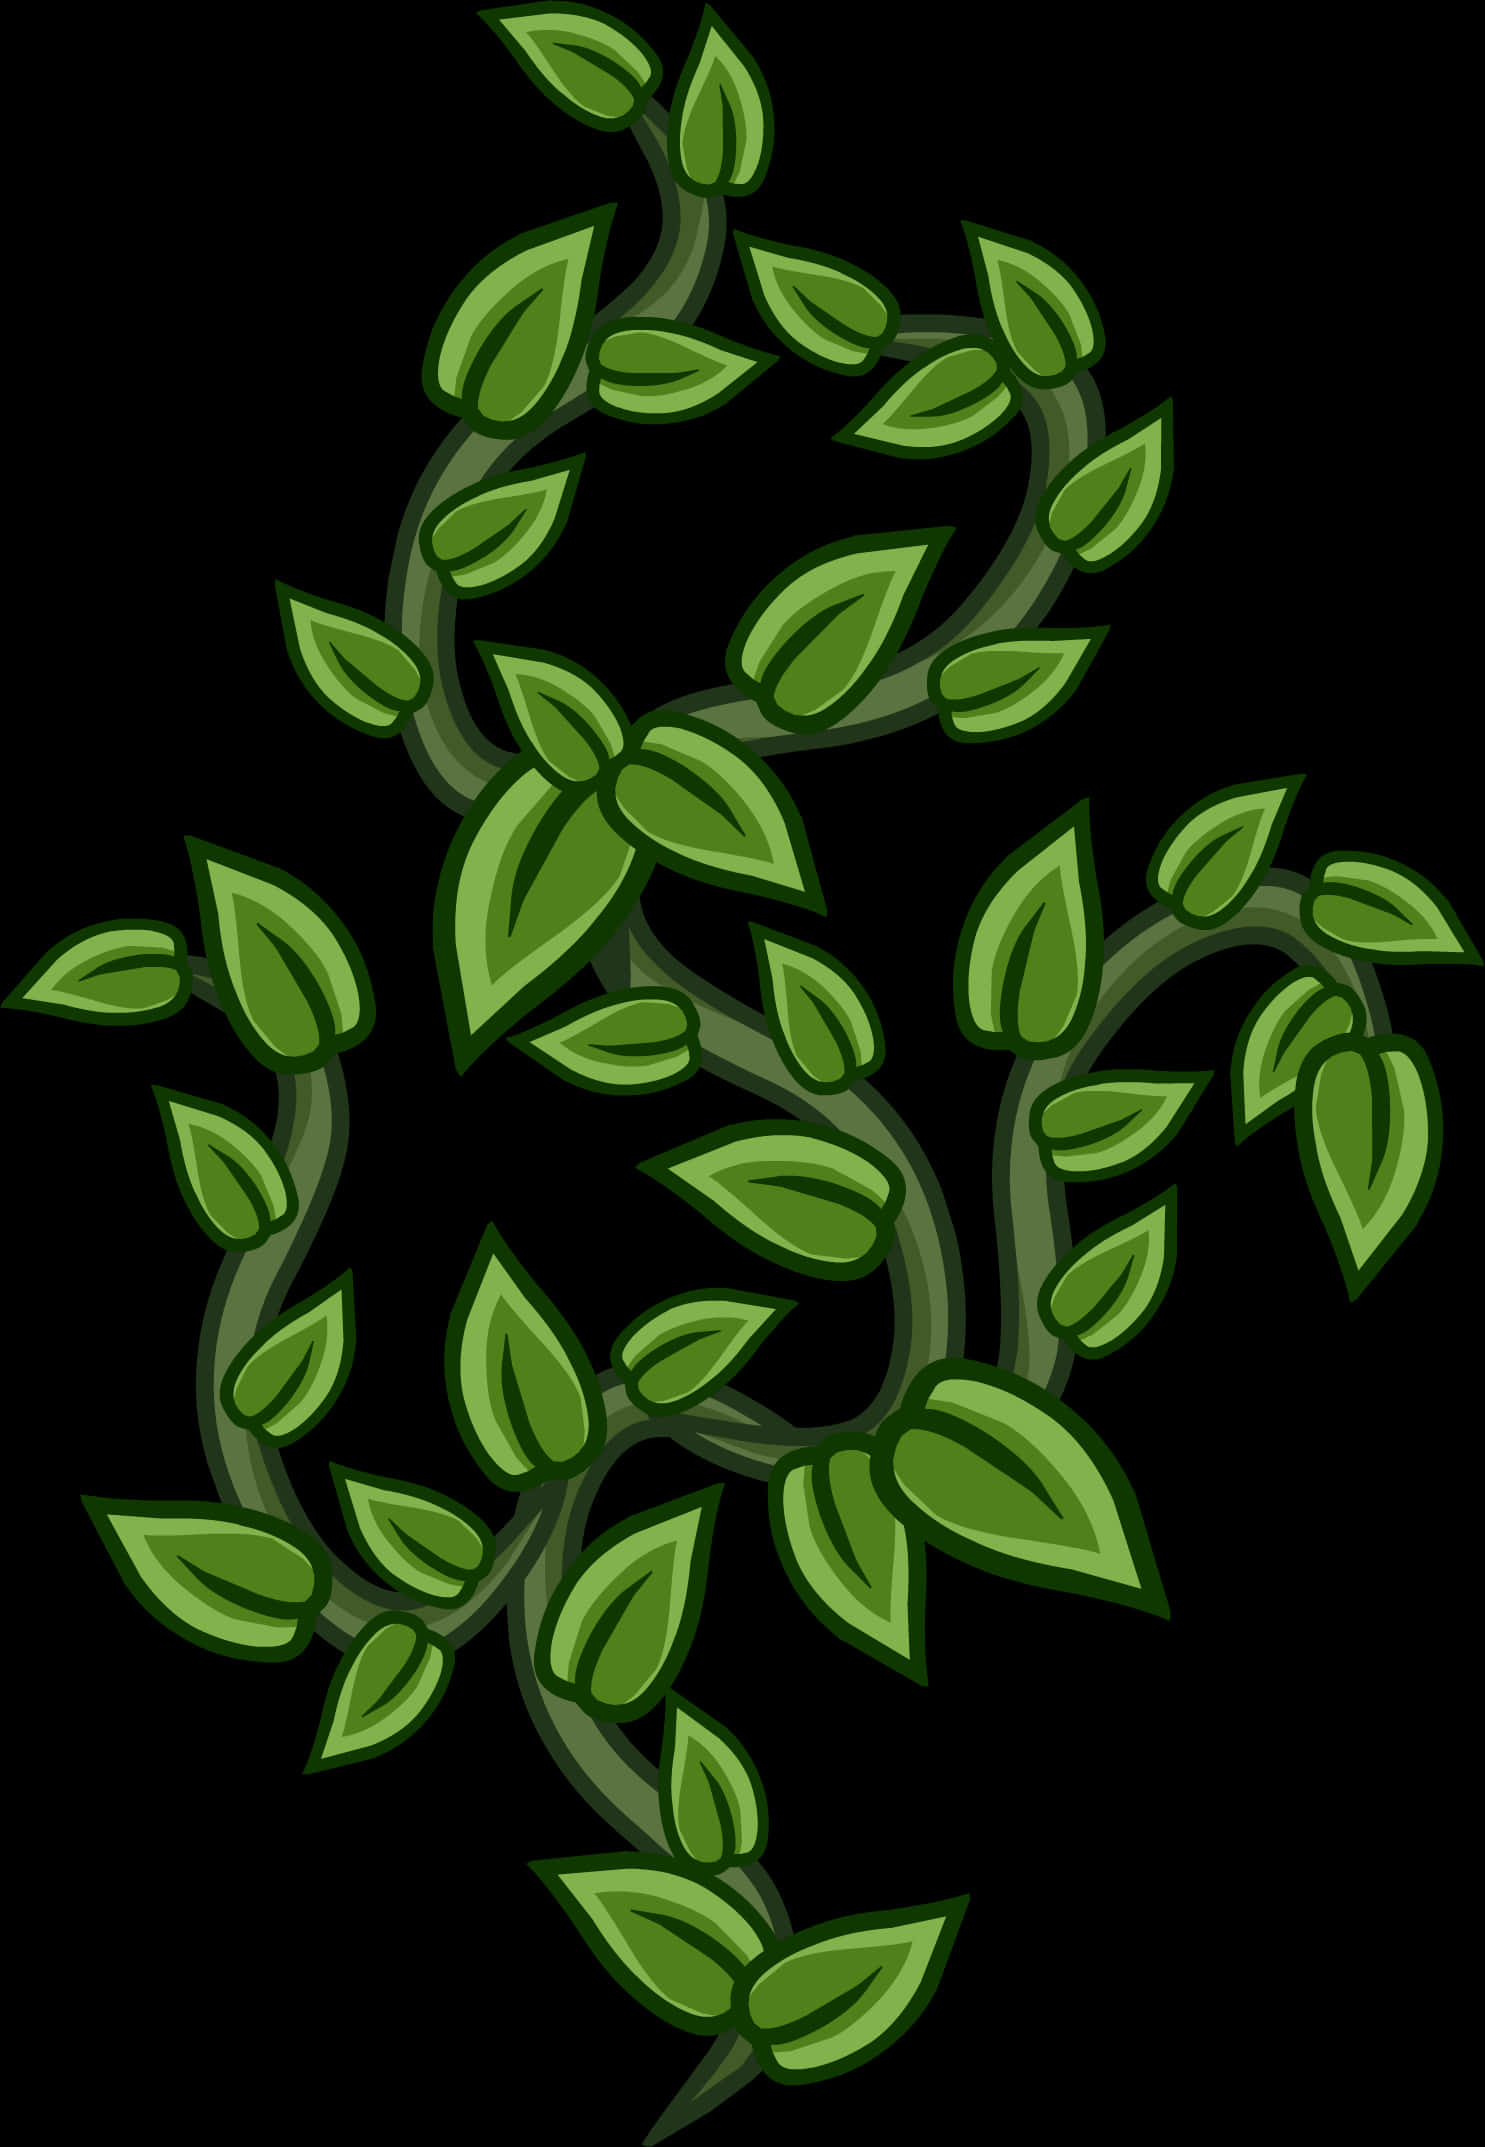 Green Vine Illustration PNG image